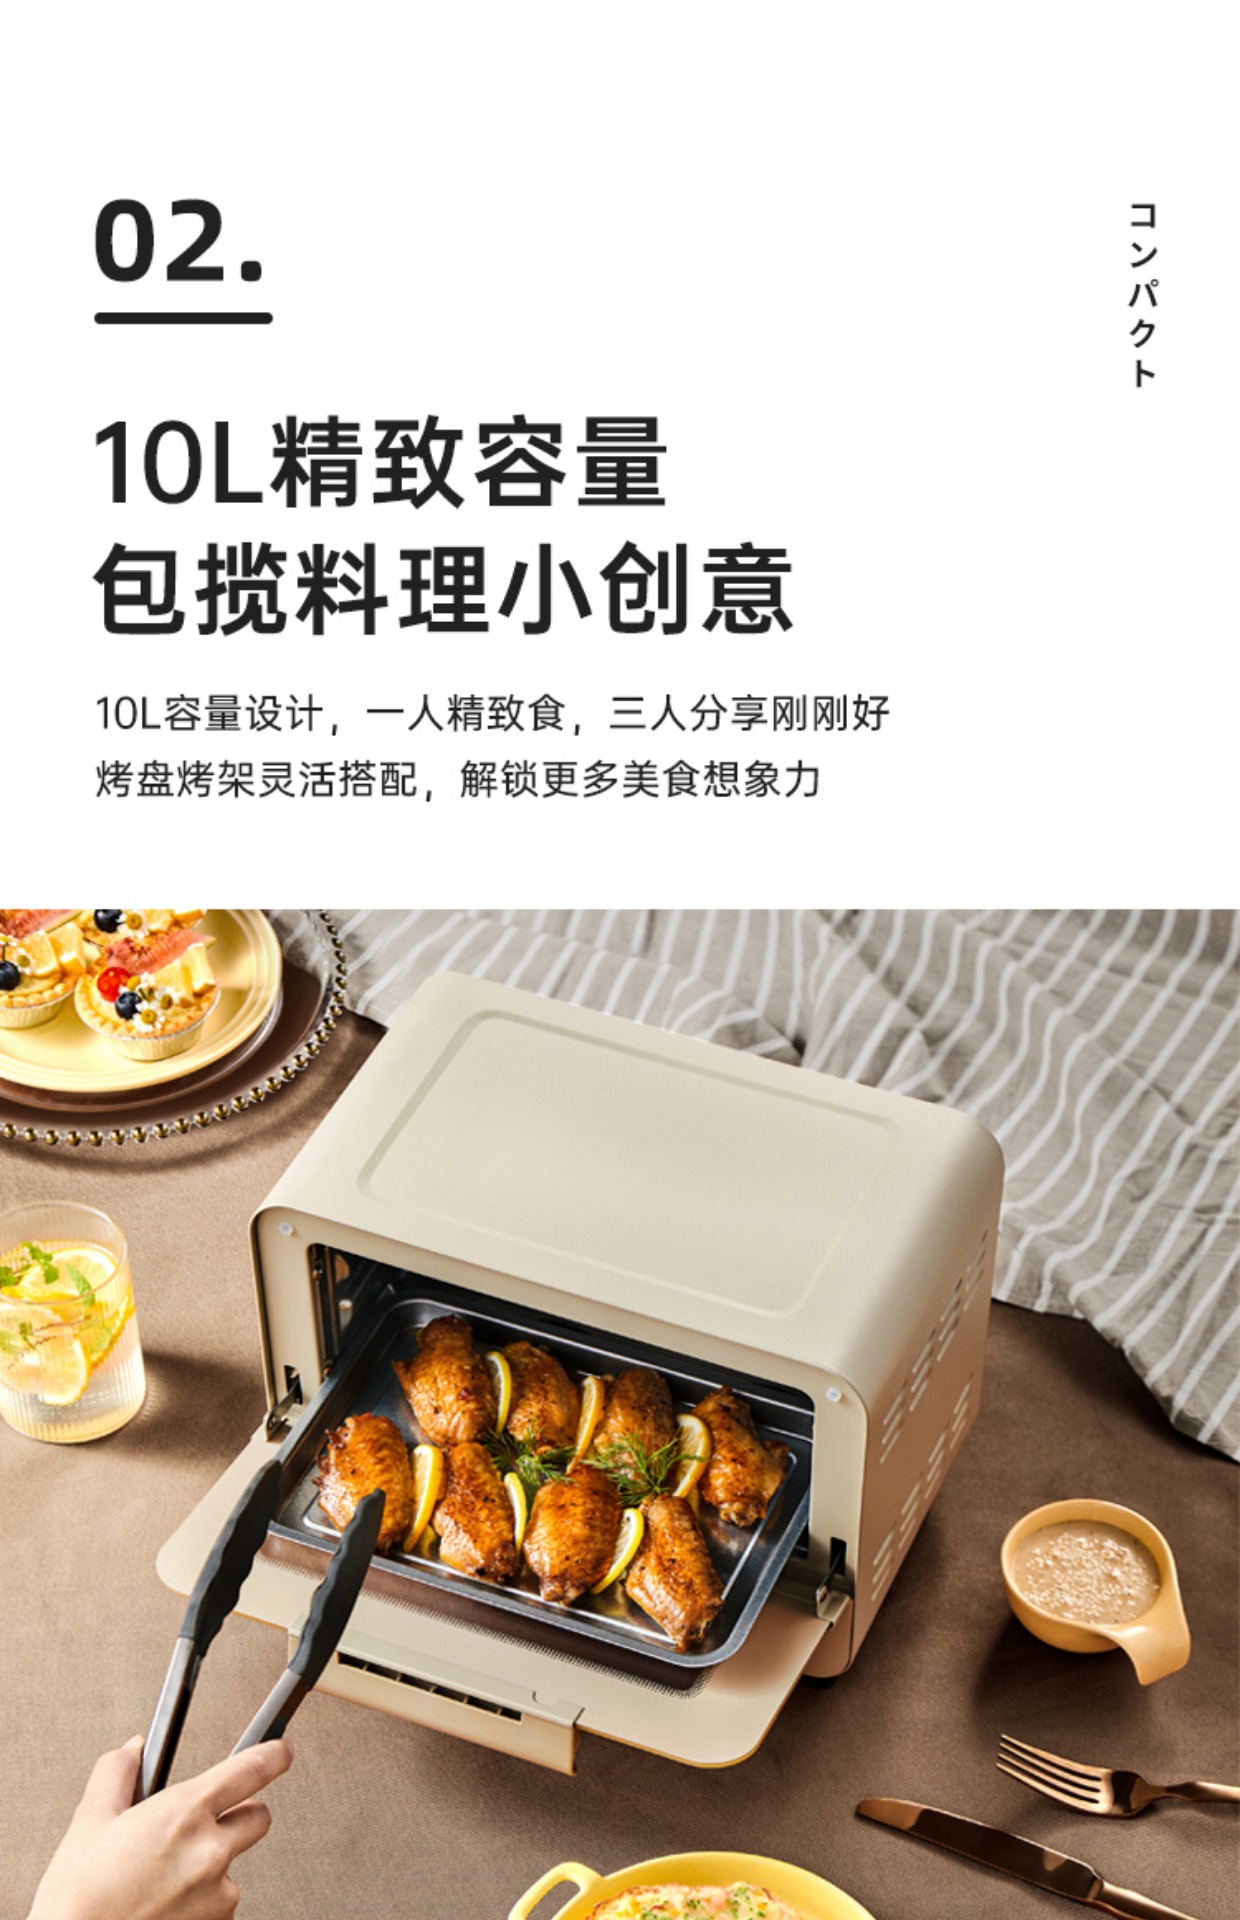 日本新品小方糖电烤箱家用烘培多功能空气炸锅迷你小容量10L-图2